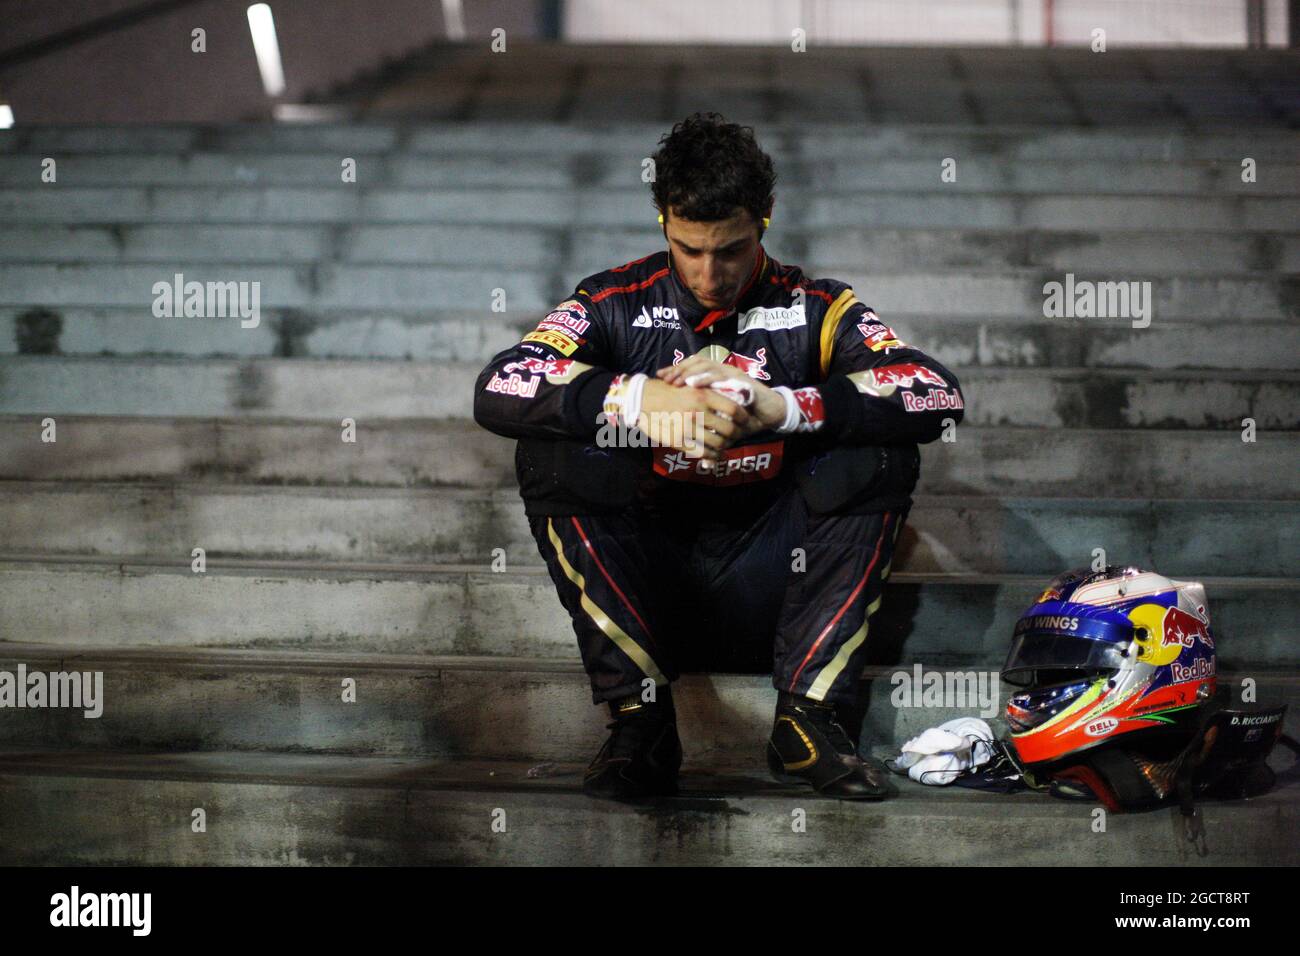 Daniel Ricciardo (AUS) Scuderia Toro Rosso si è ritirato dalla gara. Gran Premio di Singapore, domenica 22 settembre 2013. Circuito Marina Bay Street, Singapore. Foto Stock